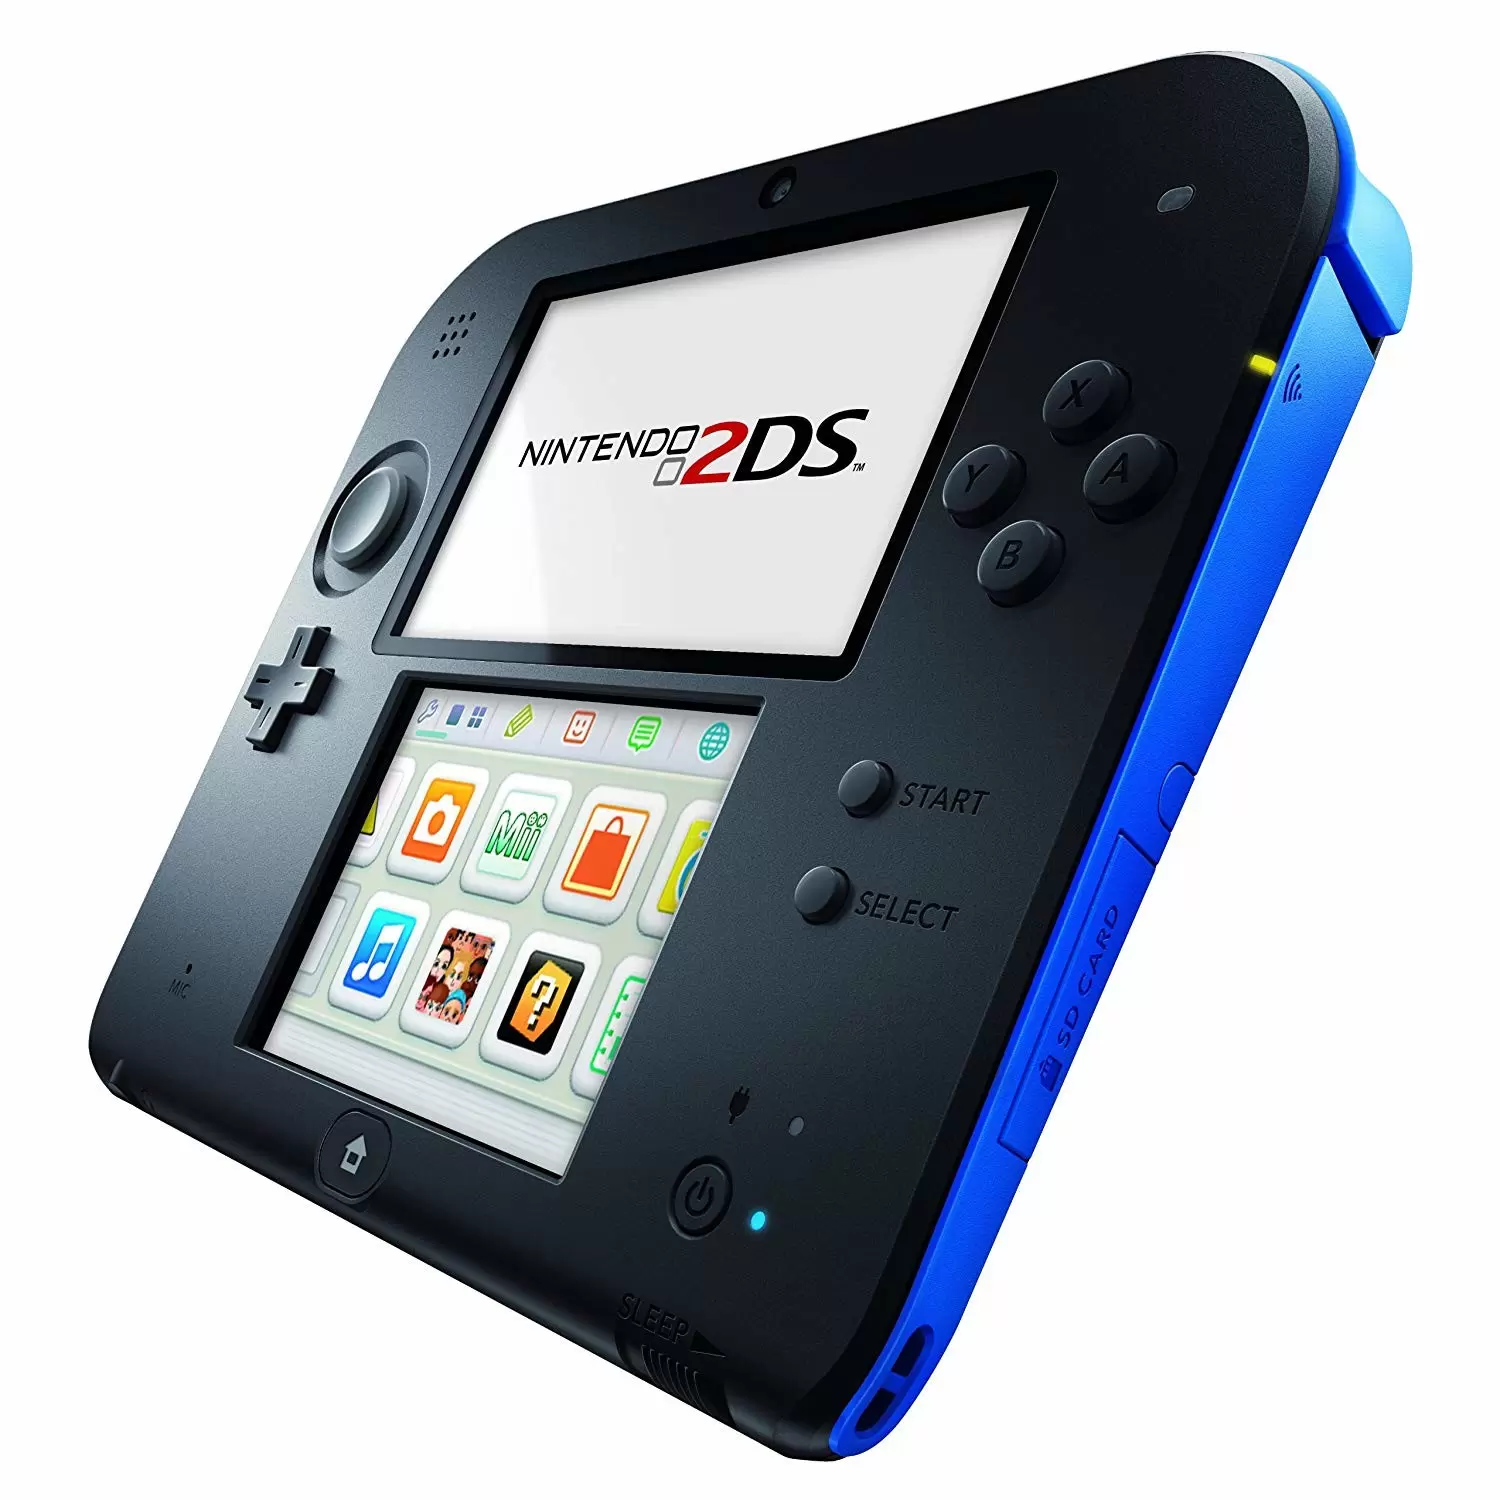 Matériel Nintendo 2DS - Nintendo 2DS noir / bleu